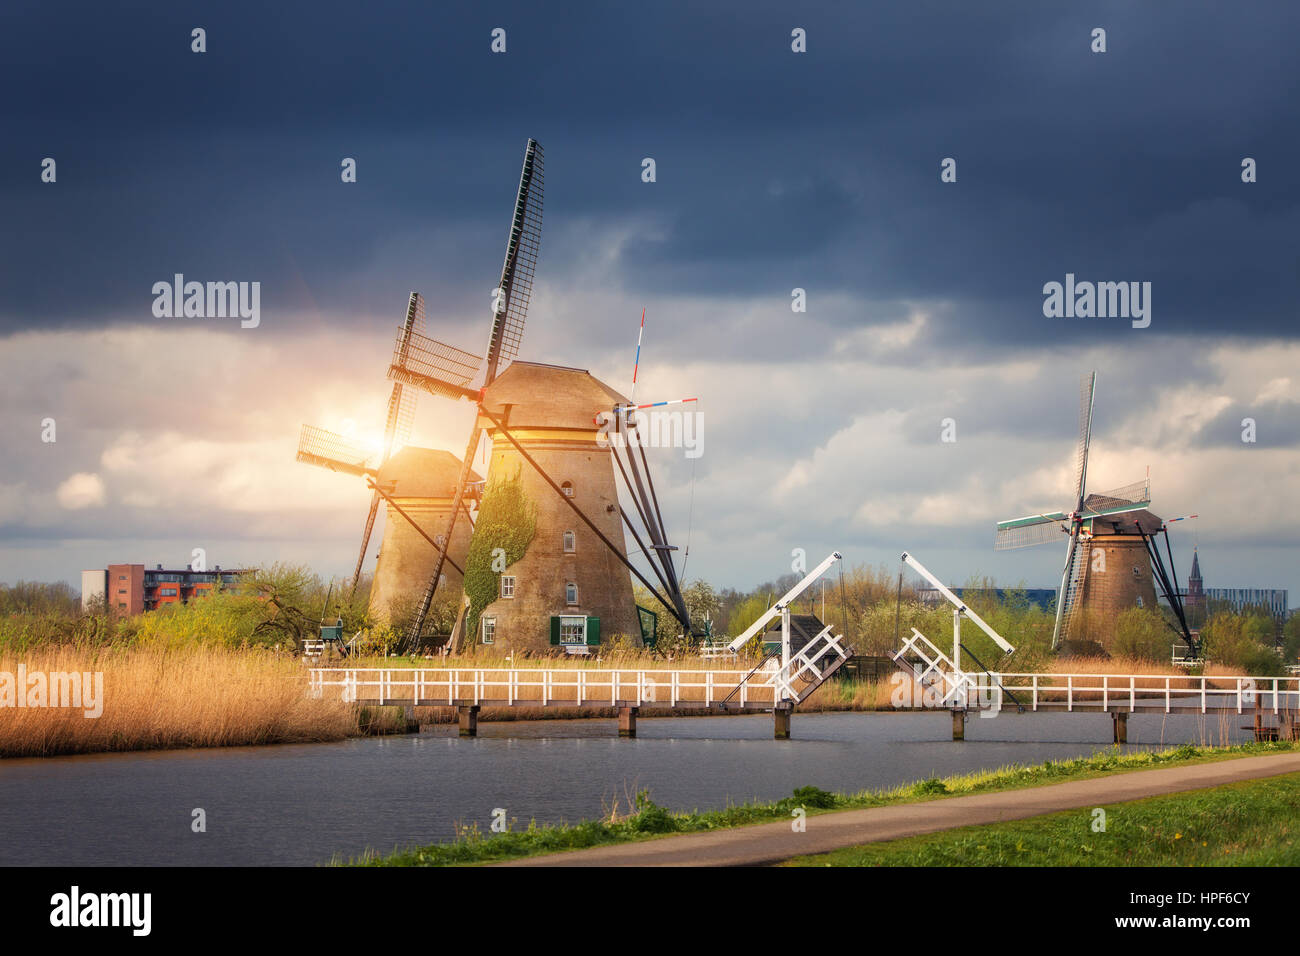 Les moulins à vent contre ciel nuageux au coucher du soleil à Kinderdijk, célèbre aux Pays-Bas. Paysage rustique avec moulins à vent traditionnel néerlandais, pont, l'eau et le ciel Banque D'Images